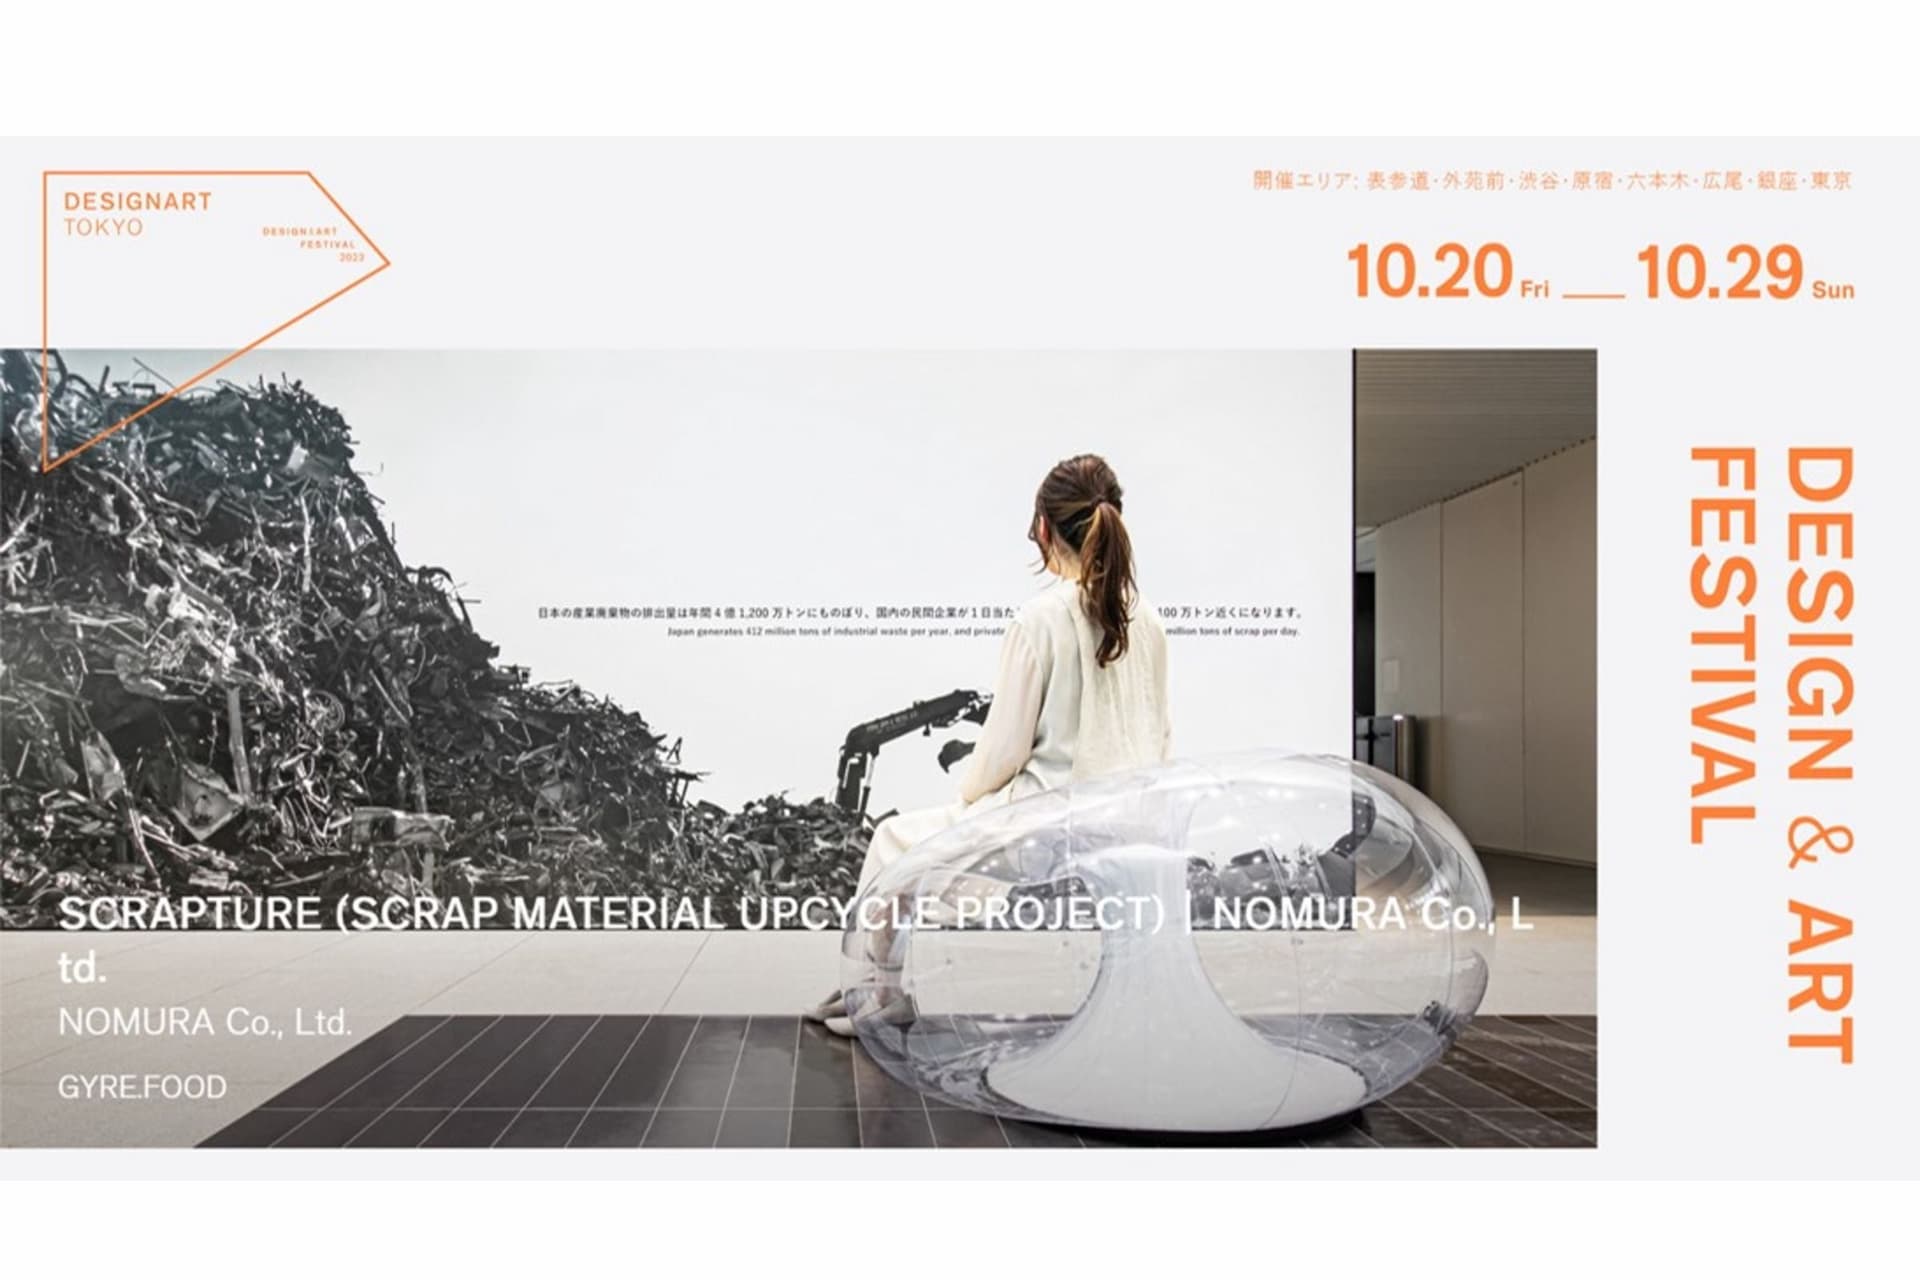 乃村工藝社、産業廃棄物を循環するファニチャーにアップサイクル 「SCRAPTURE」を「DESIGNART TOKYO 2023」に出展